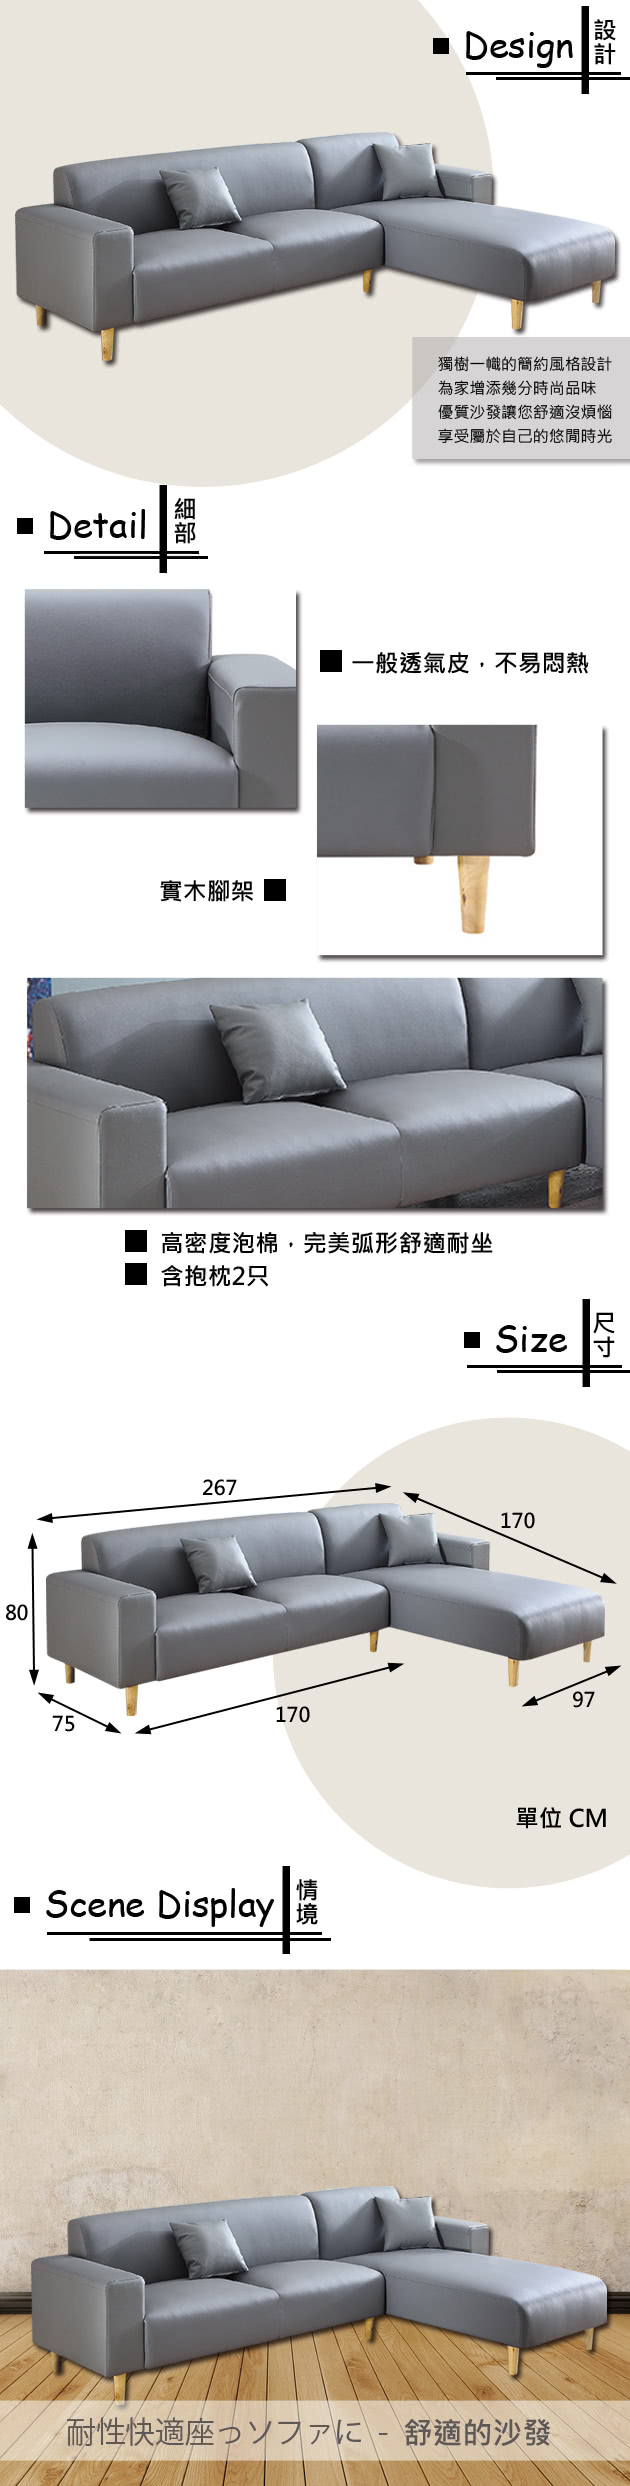 【時尚屋】蘿絲灰色特殊透氣皮三人L型沙發(U6-918-50G)